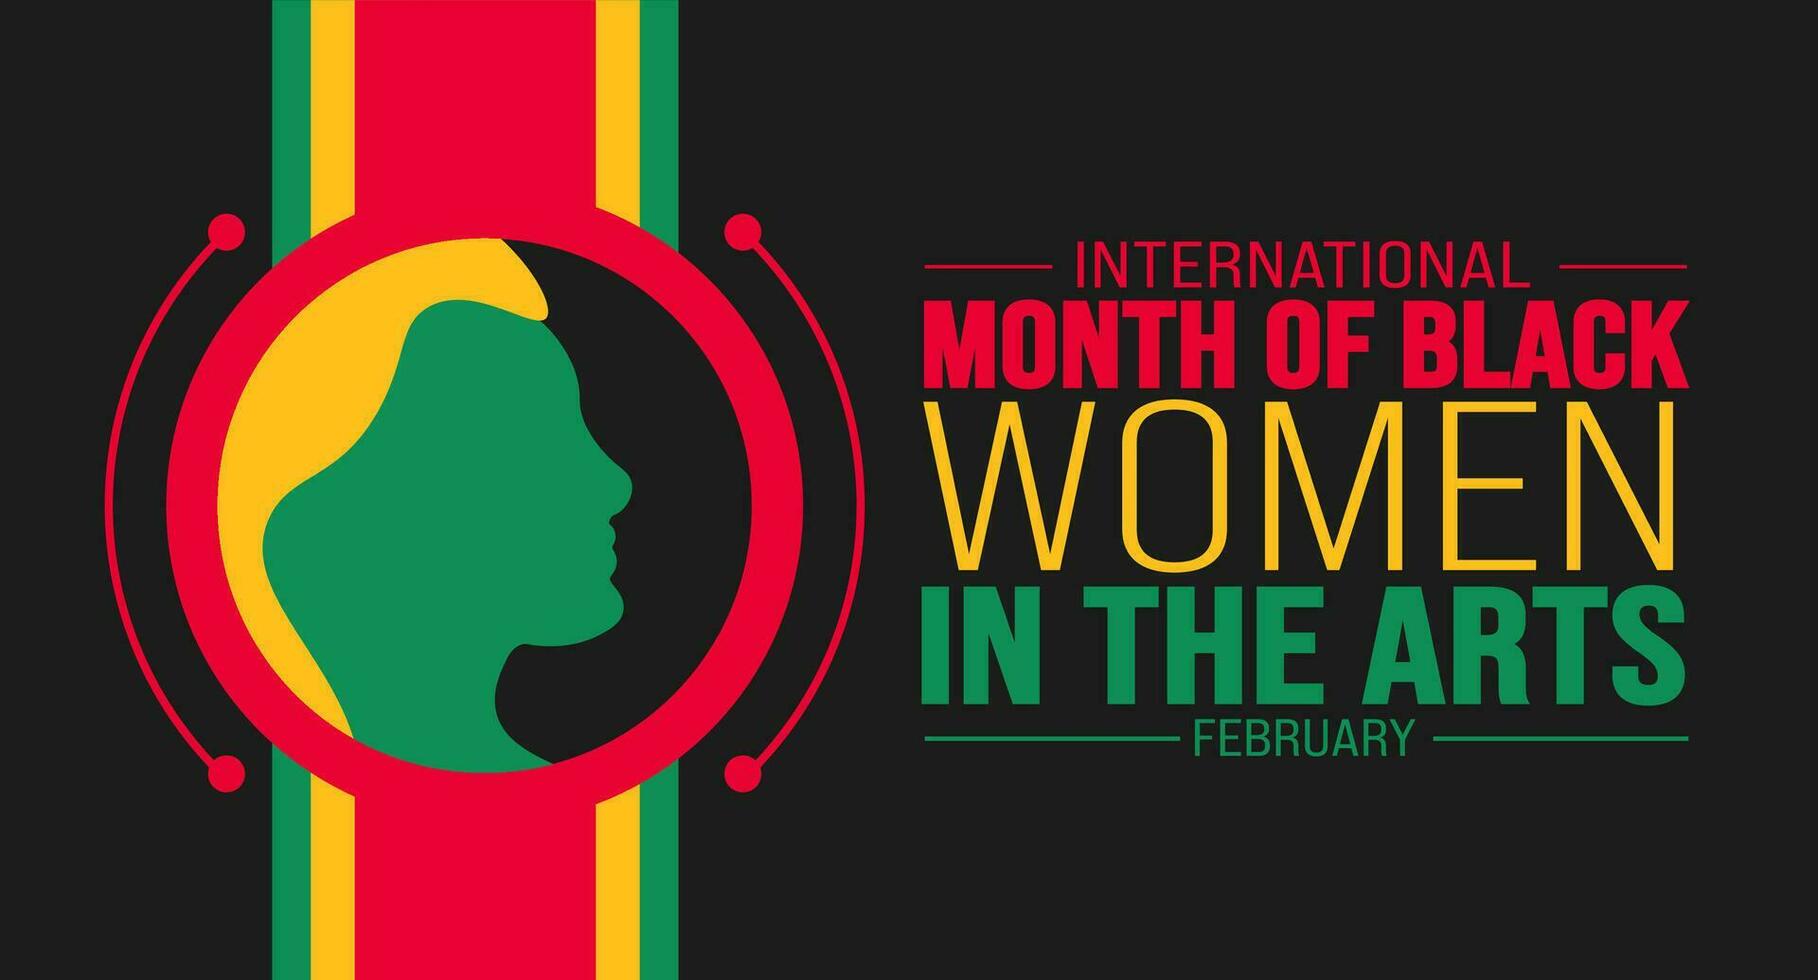 februari är internationell månad av svart kvinnor i de konst bakgrund mall. Semester begrepp. bakgrund, baner, plakat, kort, och affisch design mall med text inskrift och standard Färg. vektor